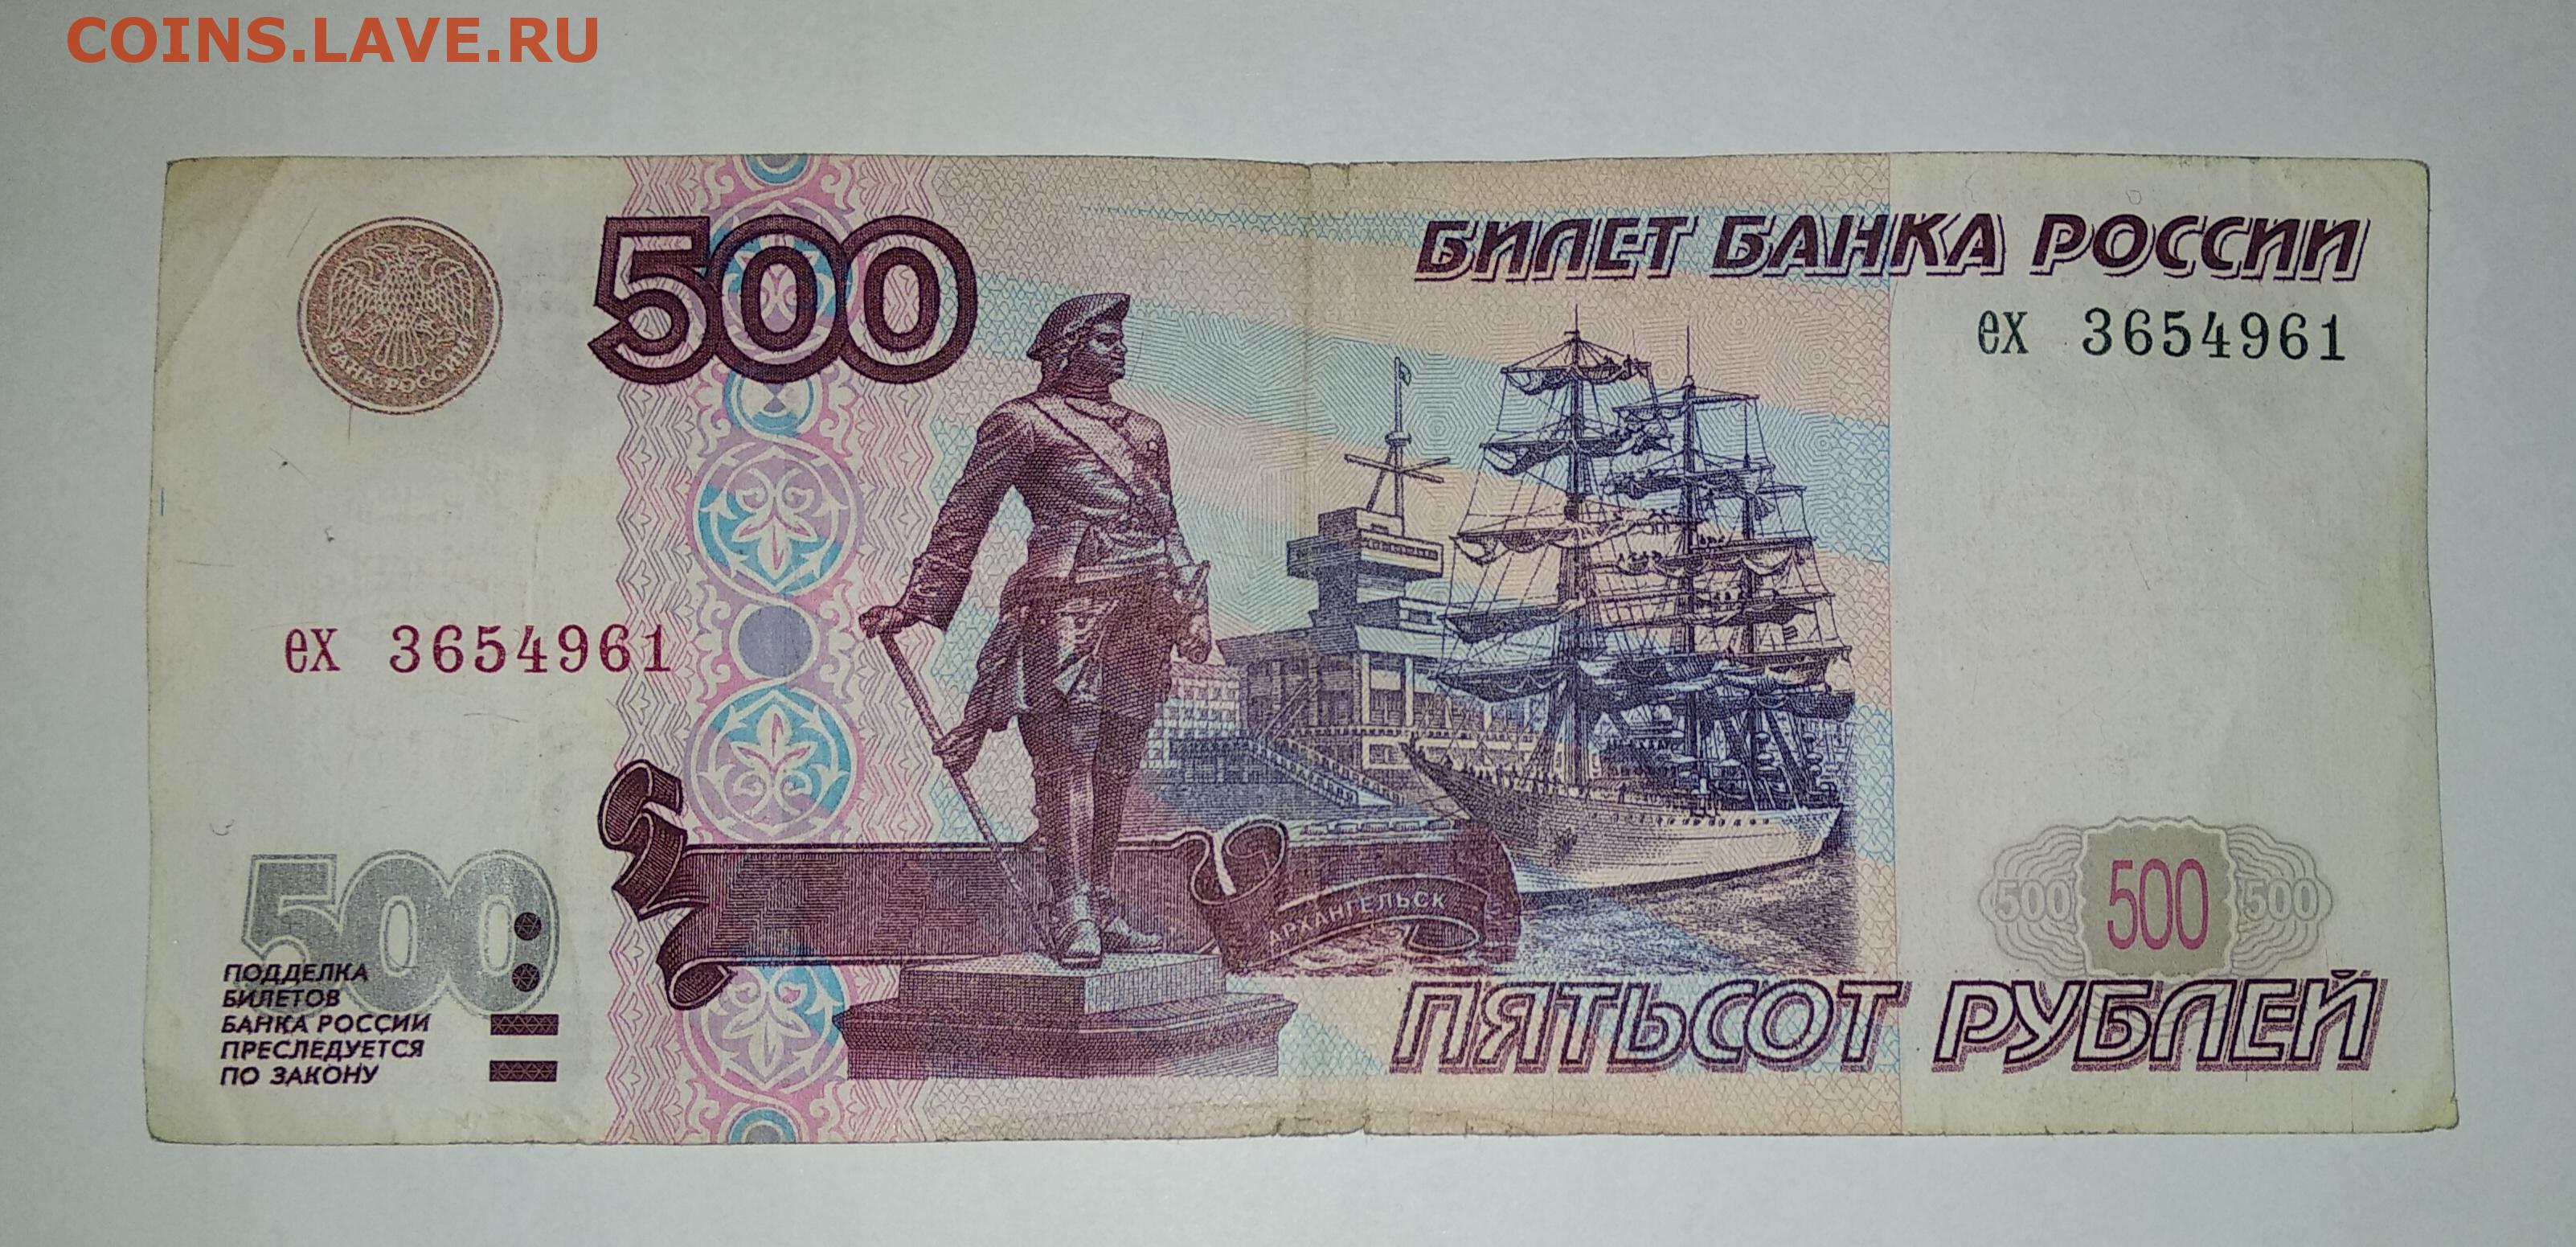 500 рублей словами. Купюра 500 рублей. 500 Рублей 1997. 500 Рублей 1997г. Купюра 500 рублей с корабликом.